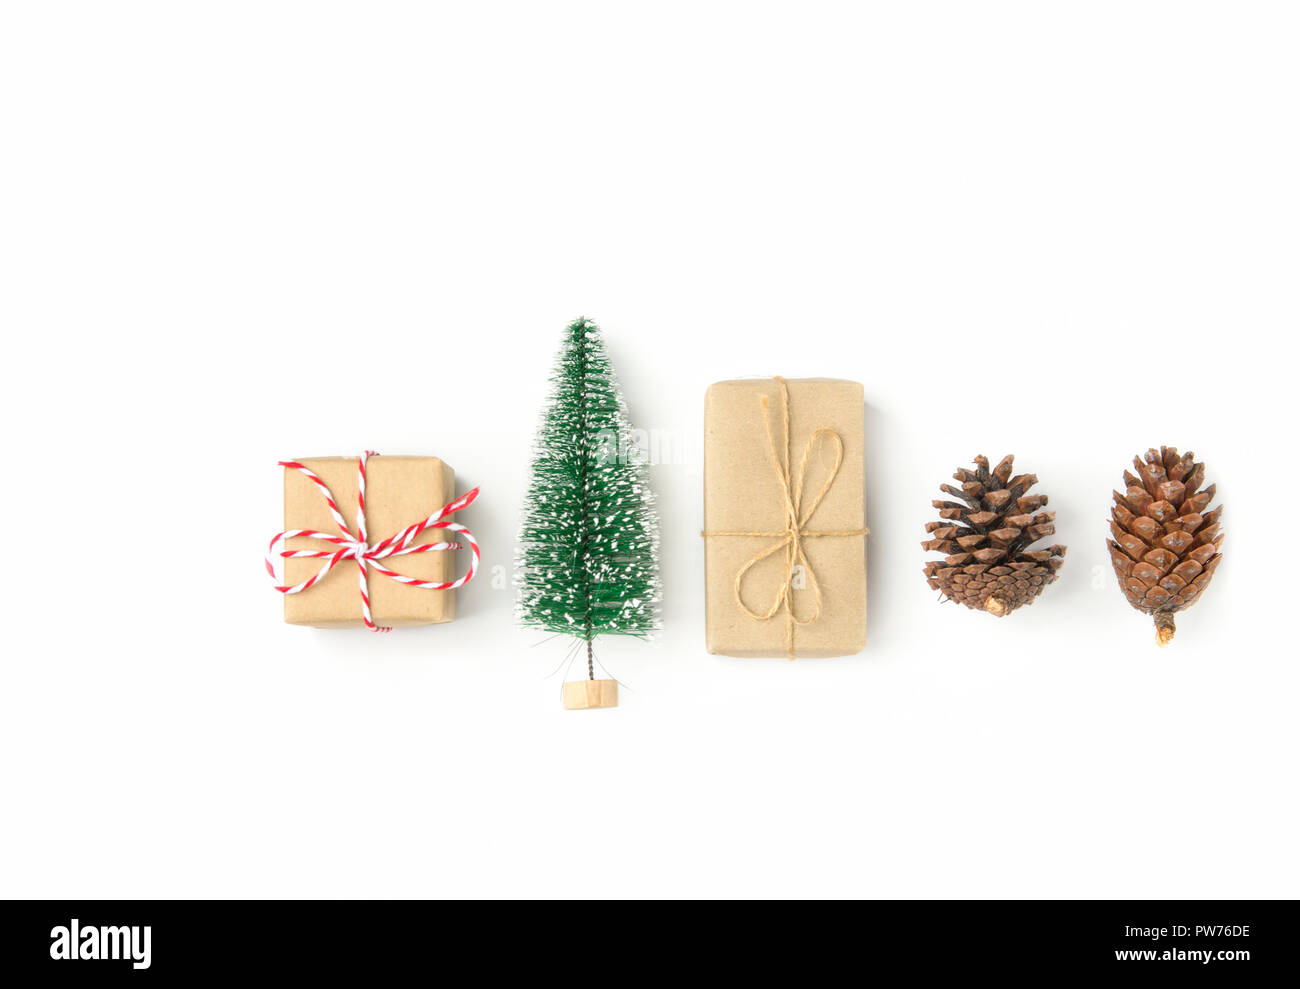 Boîtes cadeau enveloppé dans du papier craft arbre de Noël pomme de pin disposées en ligne sur fond blanc solide. Knolling mise à plat. Nouvelle année présente maison de pr Banque D'Images